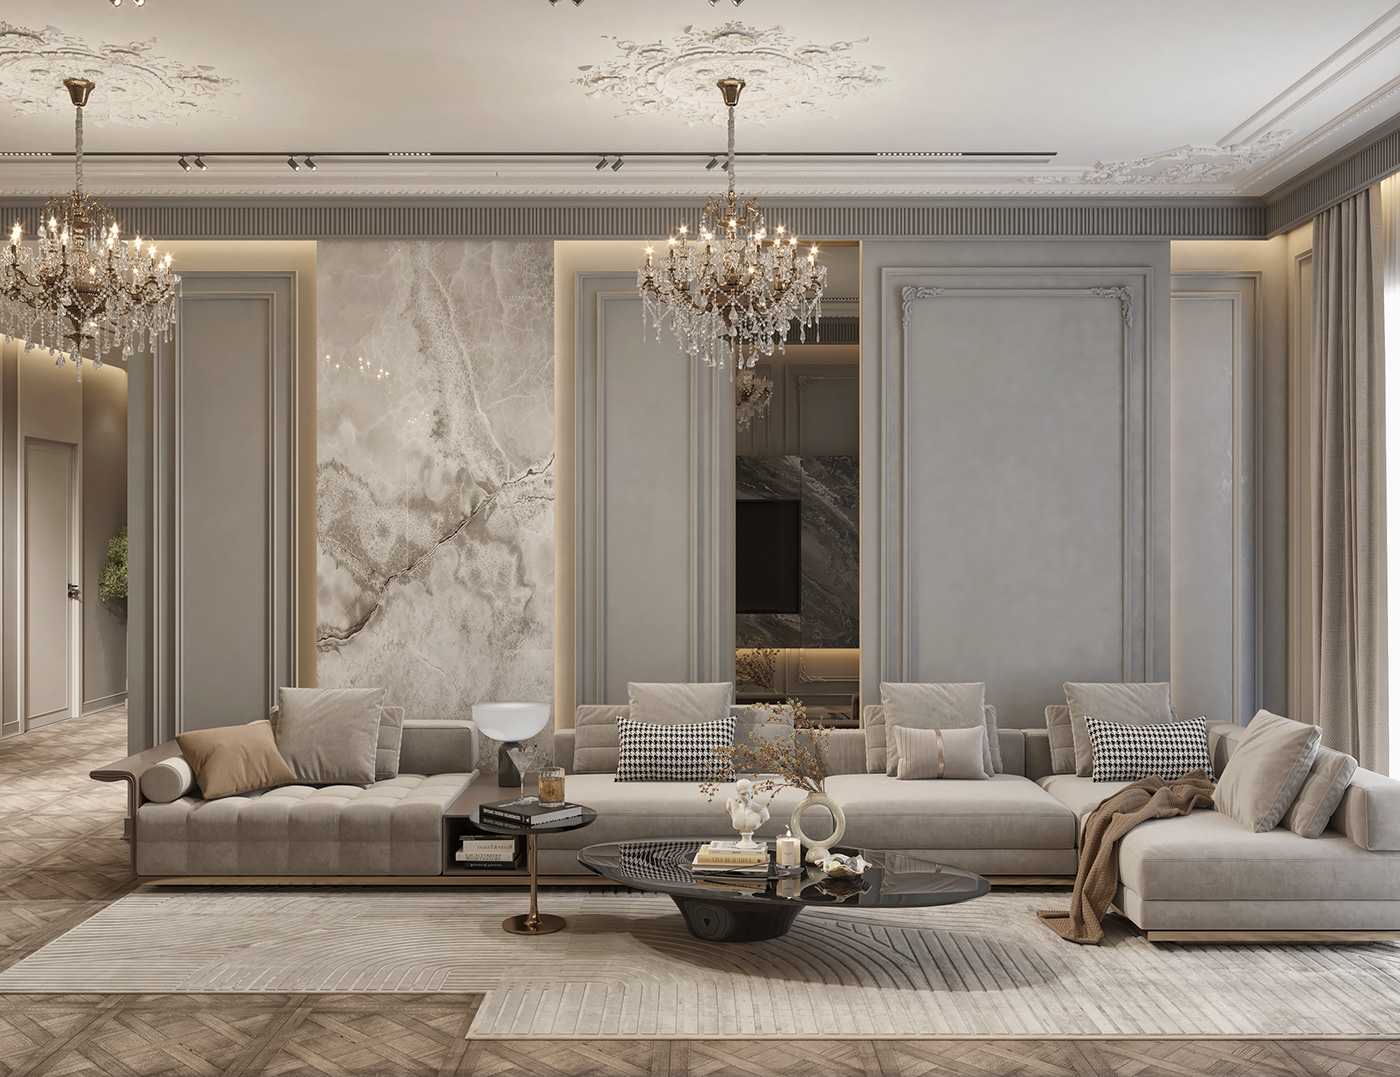 interior design  interiordesign Render visualization architecture neoclassic Classic indoor living room livingroom